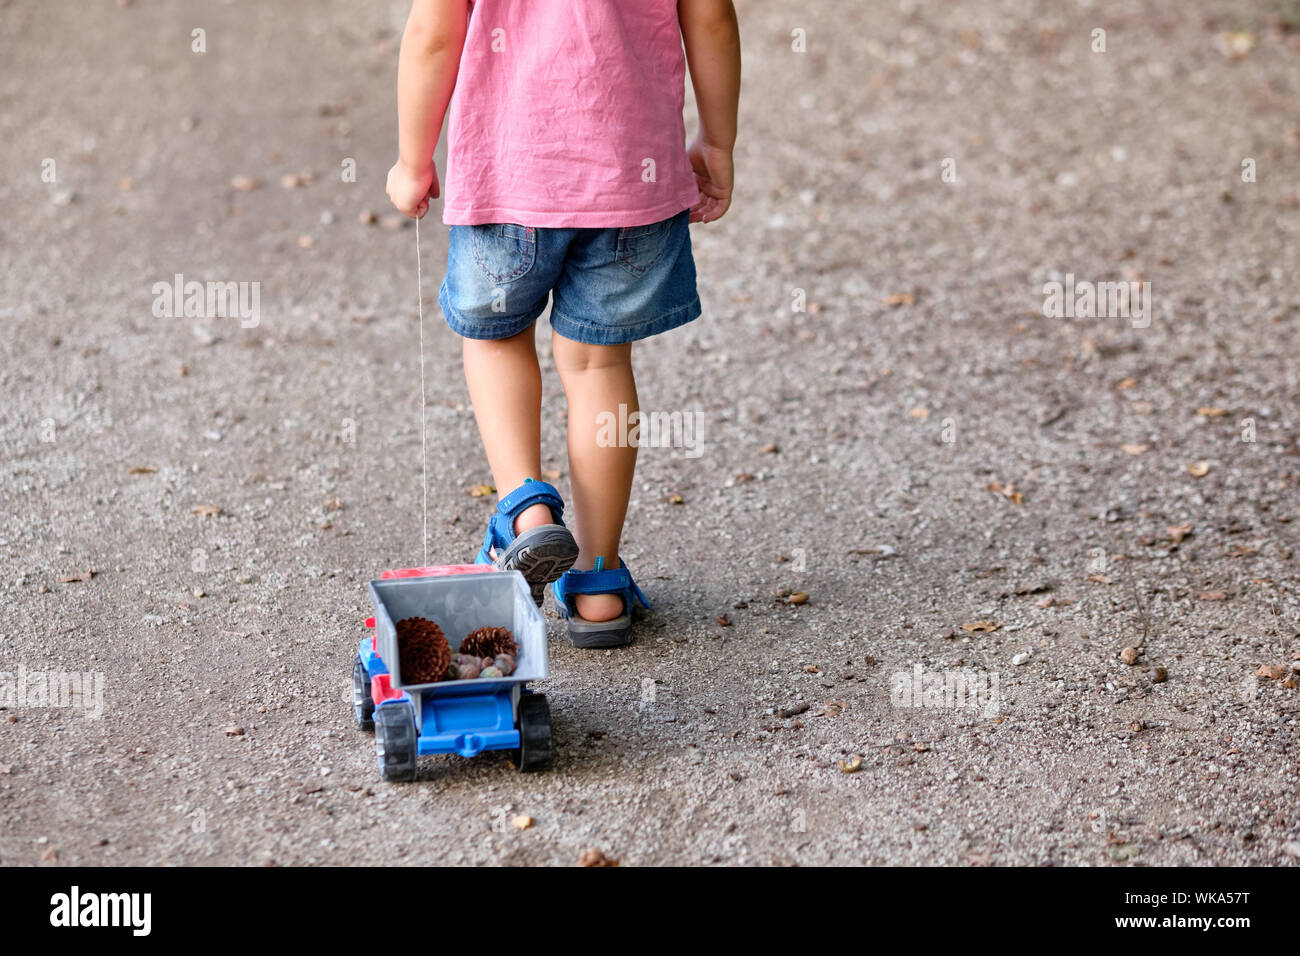 Rückansicht des unteren Abschnitt von einem 3-4 jährigen Kind im Sommer Kleidung auf einer Kiesgrube Fußweg Ziehen einer Spielzeug-LKW mit Kegel in Es Stockfoto